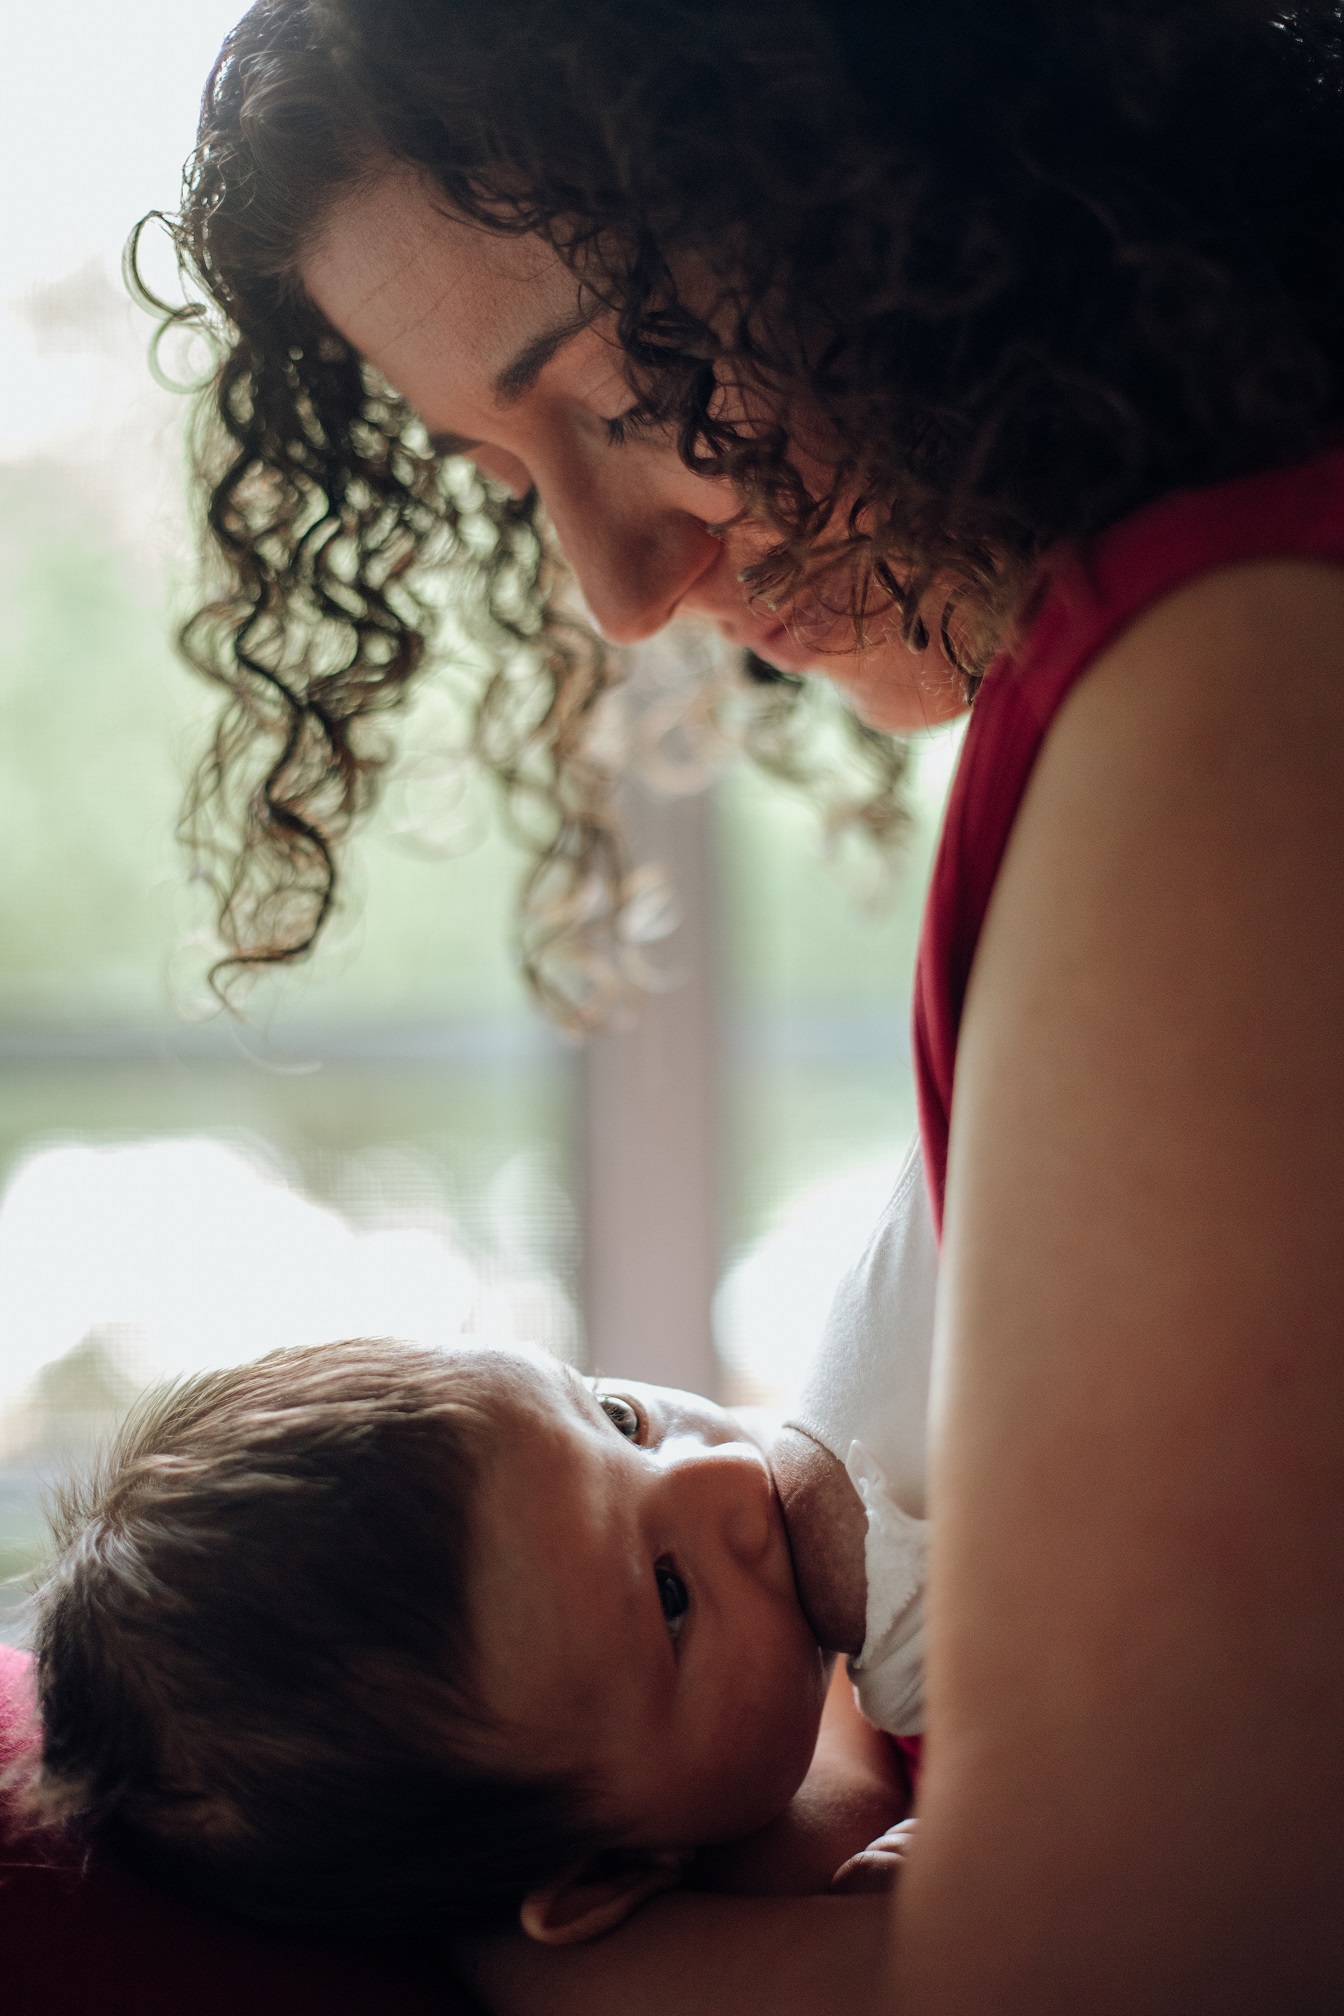 My experience breastfeeding